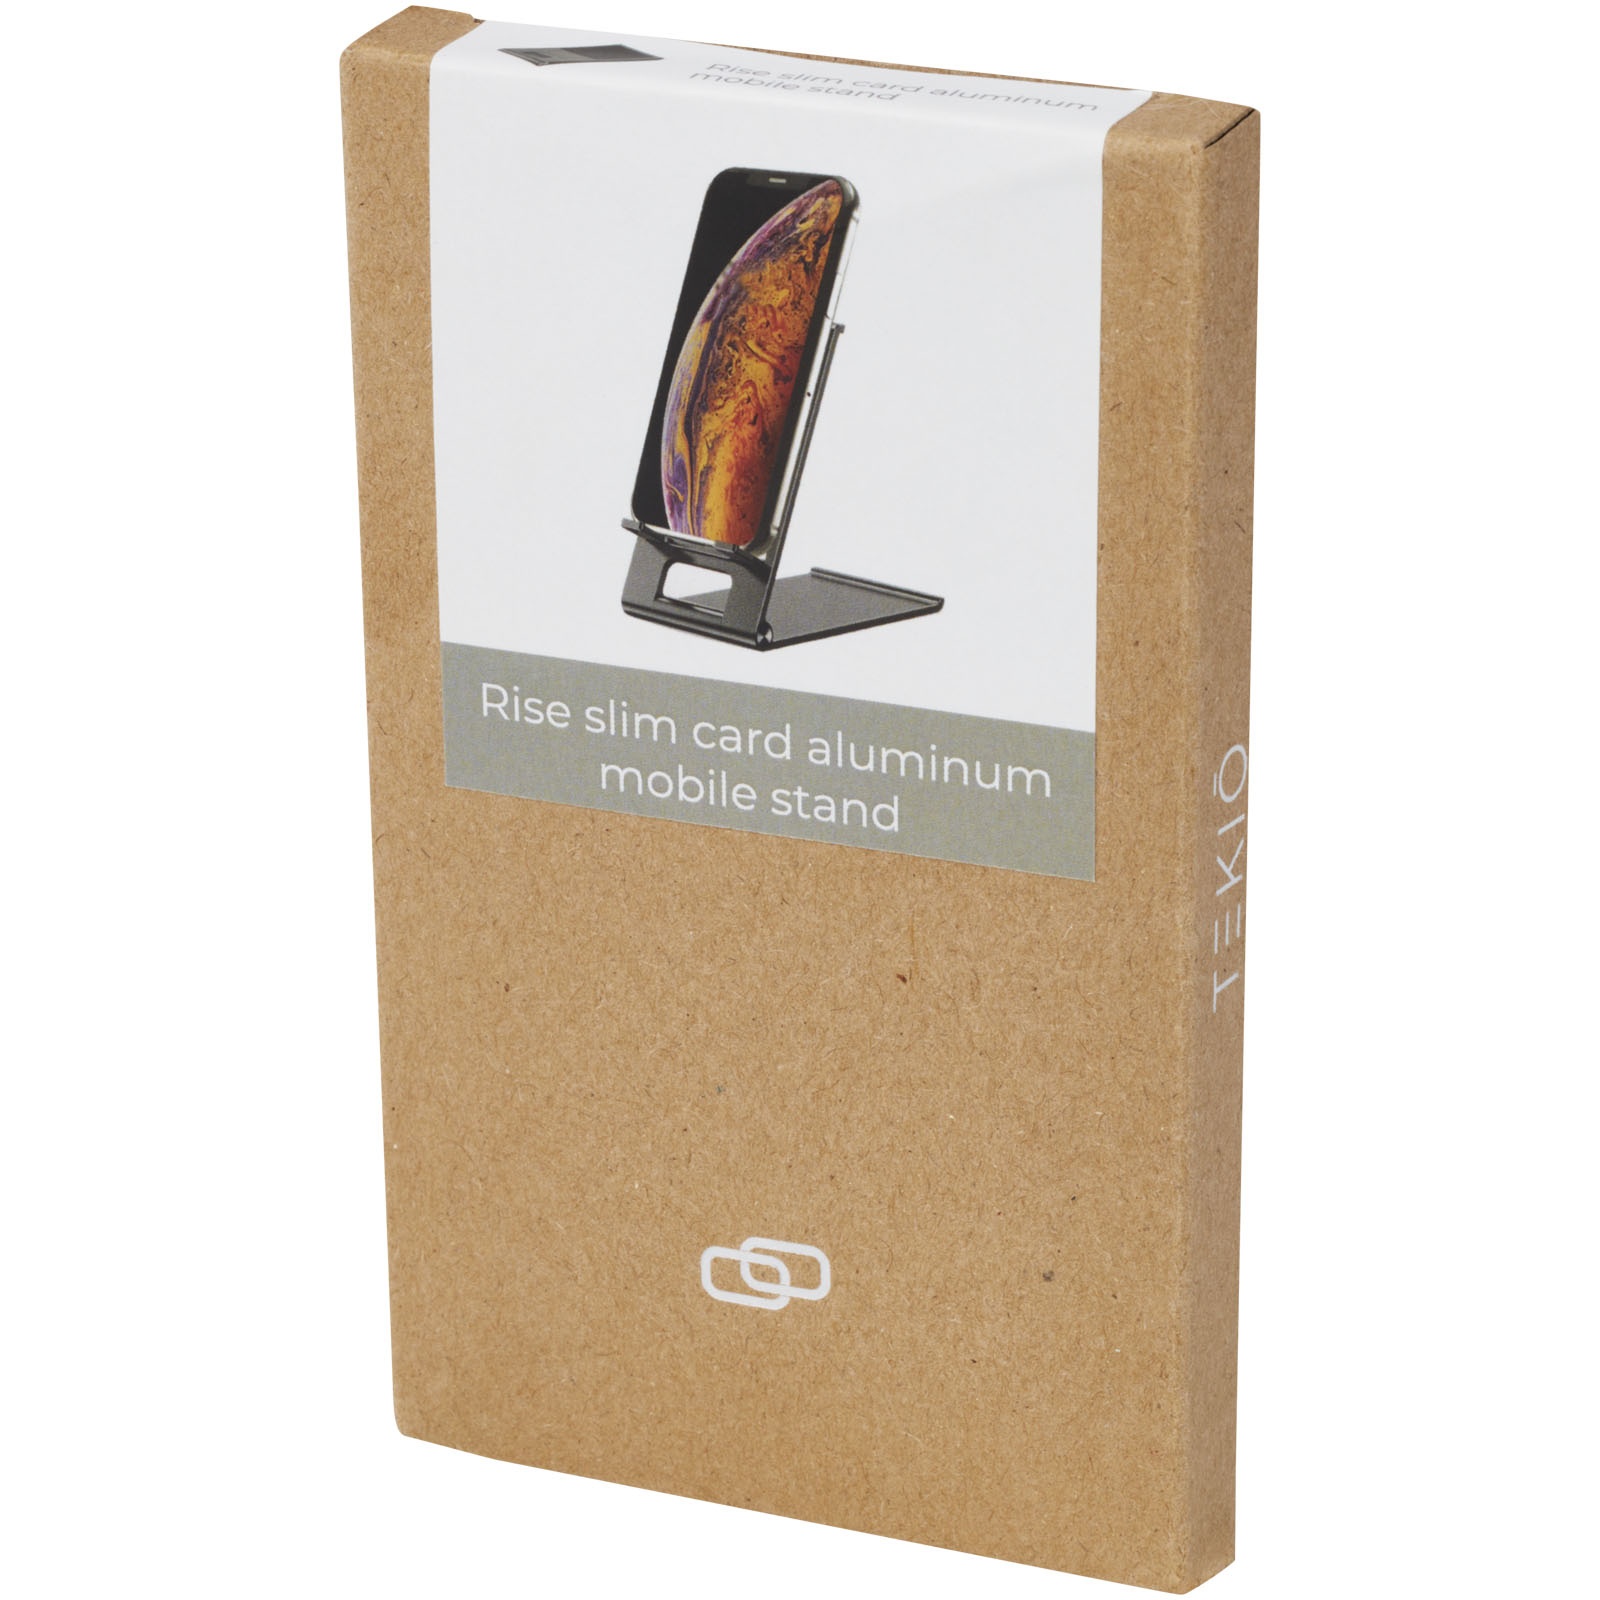 Advertising Telephone & Tablet Accessories - Rise slim aluminium phone stand - 1